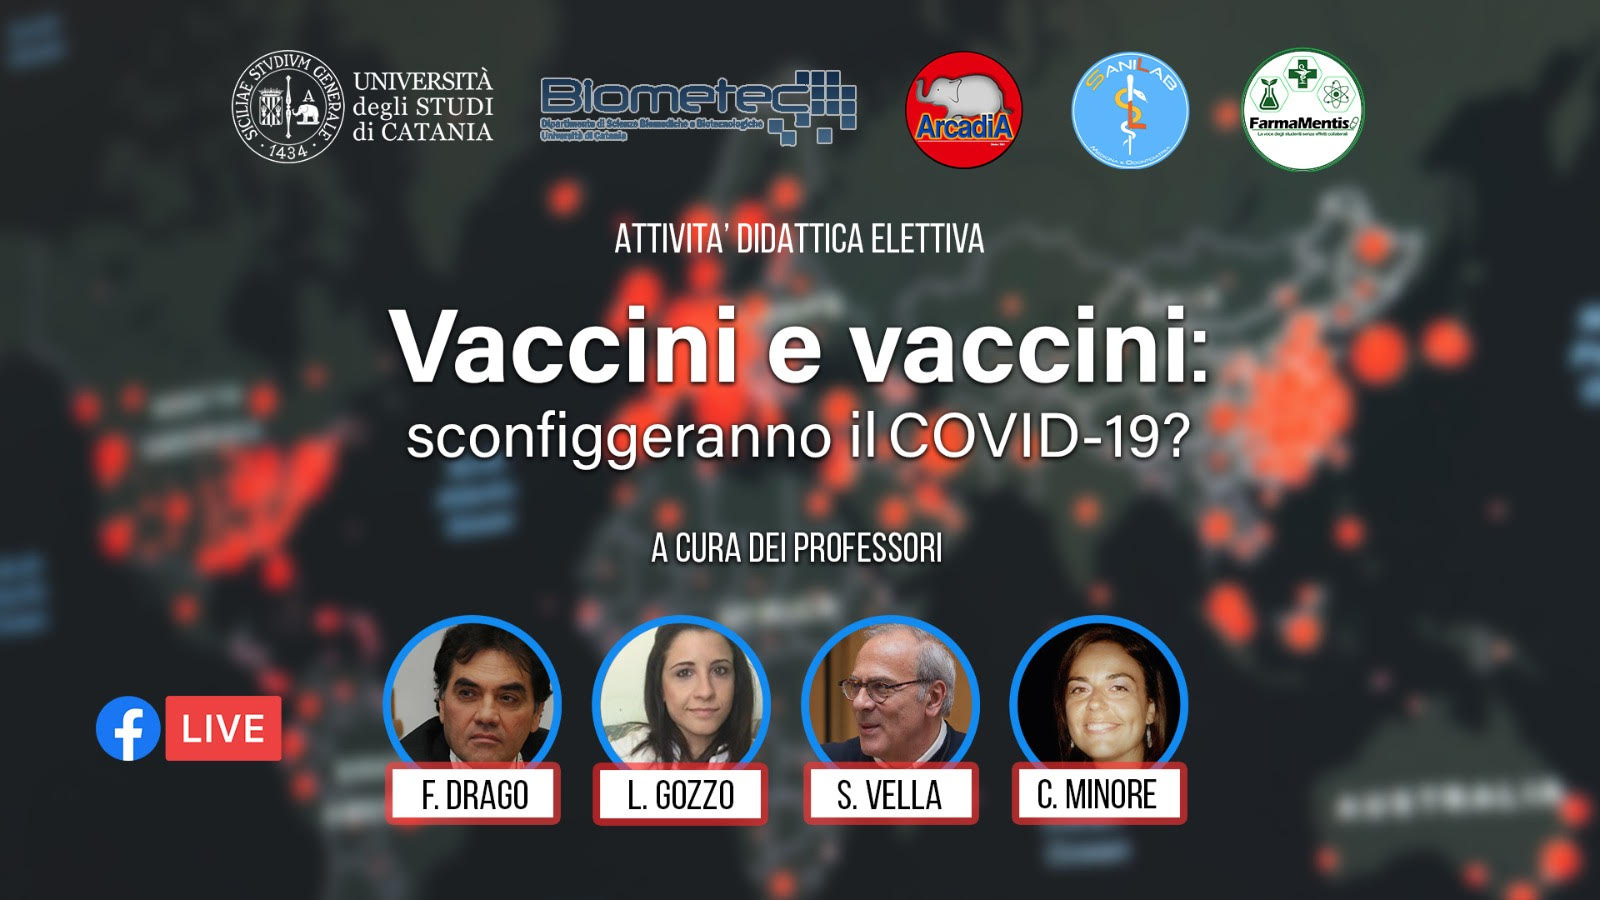 “Vaccini e vaccini: sconfiggeranno il Covid-19?”,  duemila iscritti all’ADE promosso da Arcadia, SaniLab, FamaMentis e da Biometec